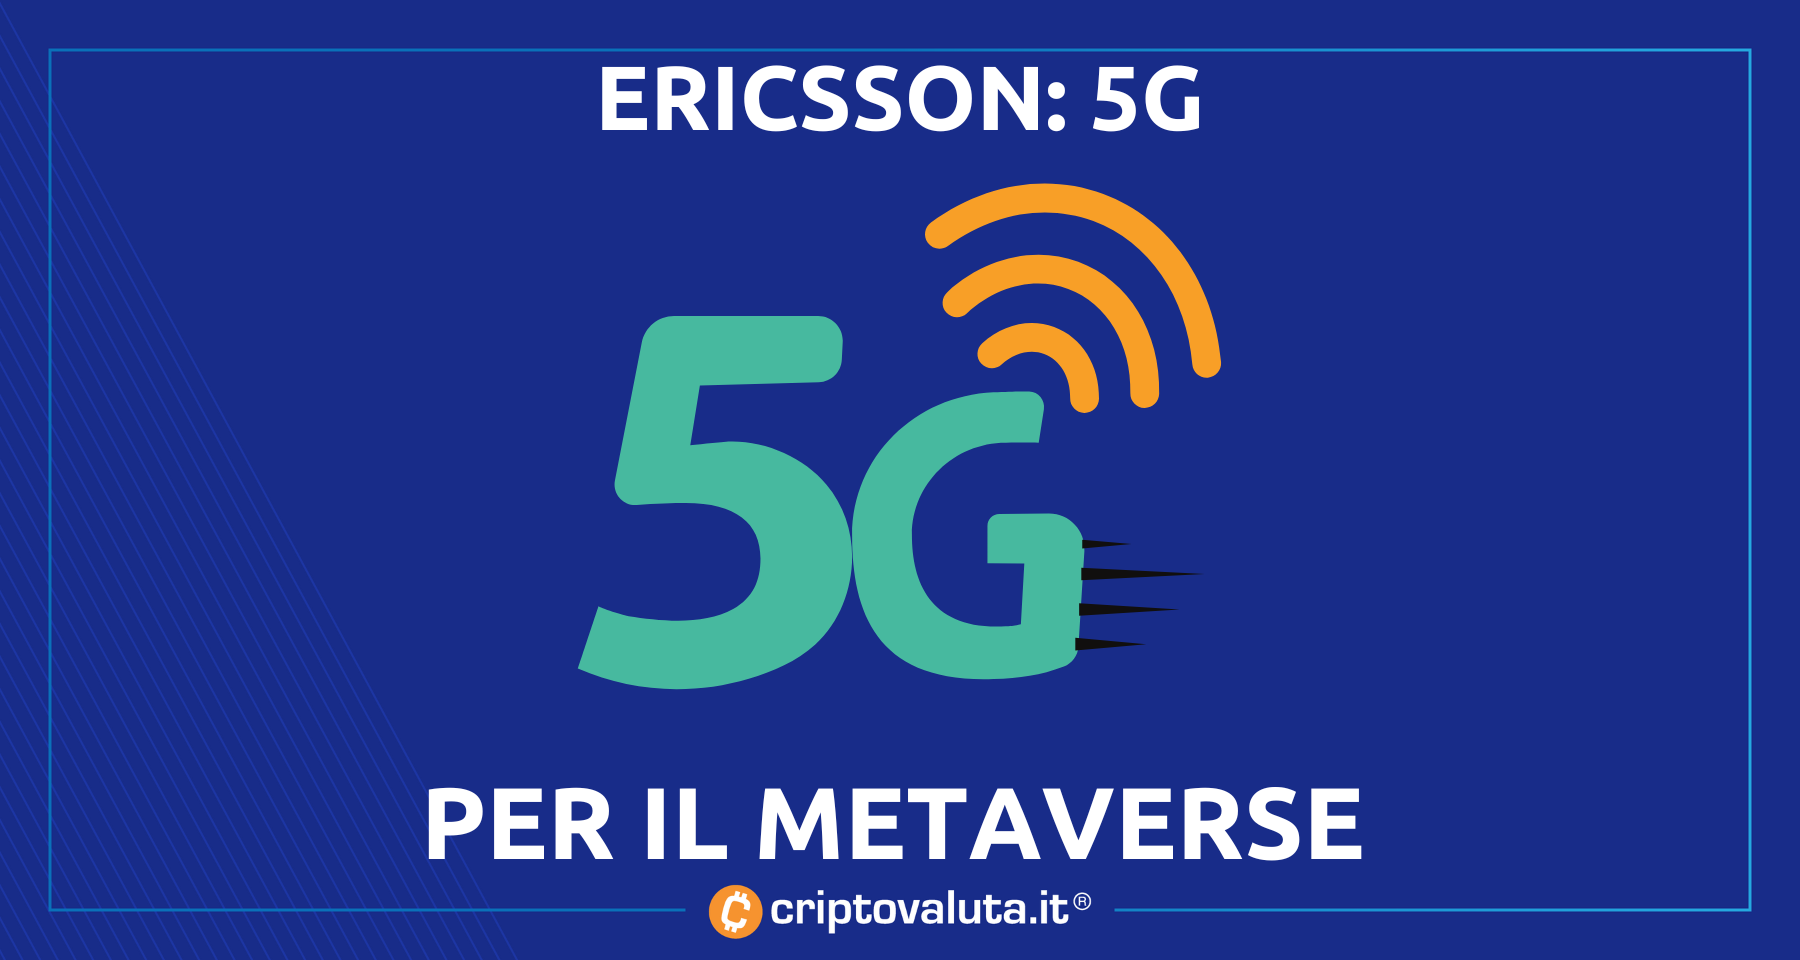 Ericsson: “5G spingerà il metaverse” | L’analisi della società telco